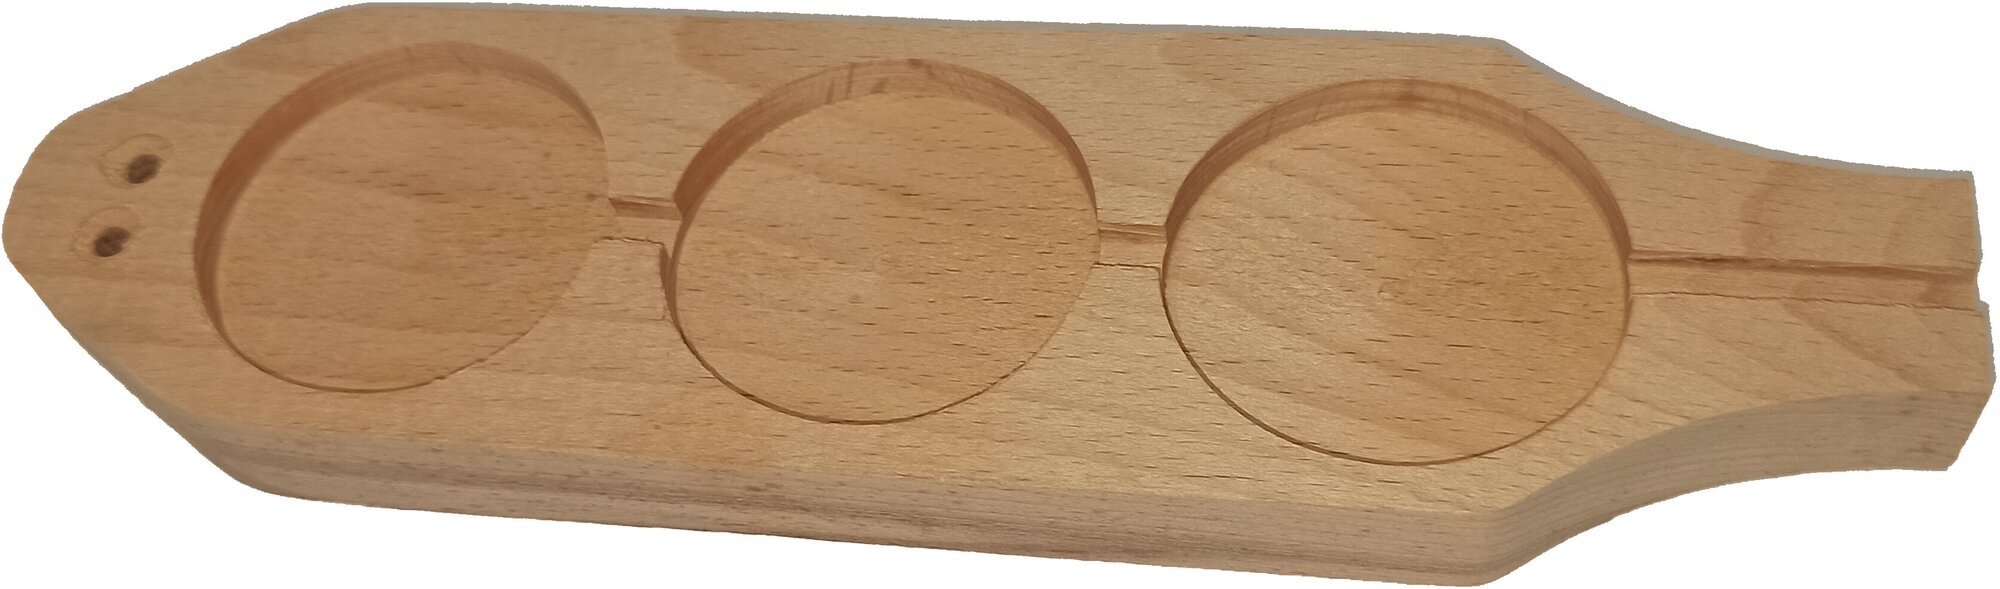 Плашка для опечатывания деревянная 3 звена